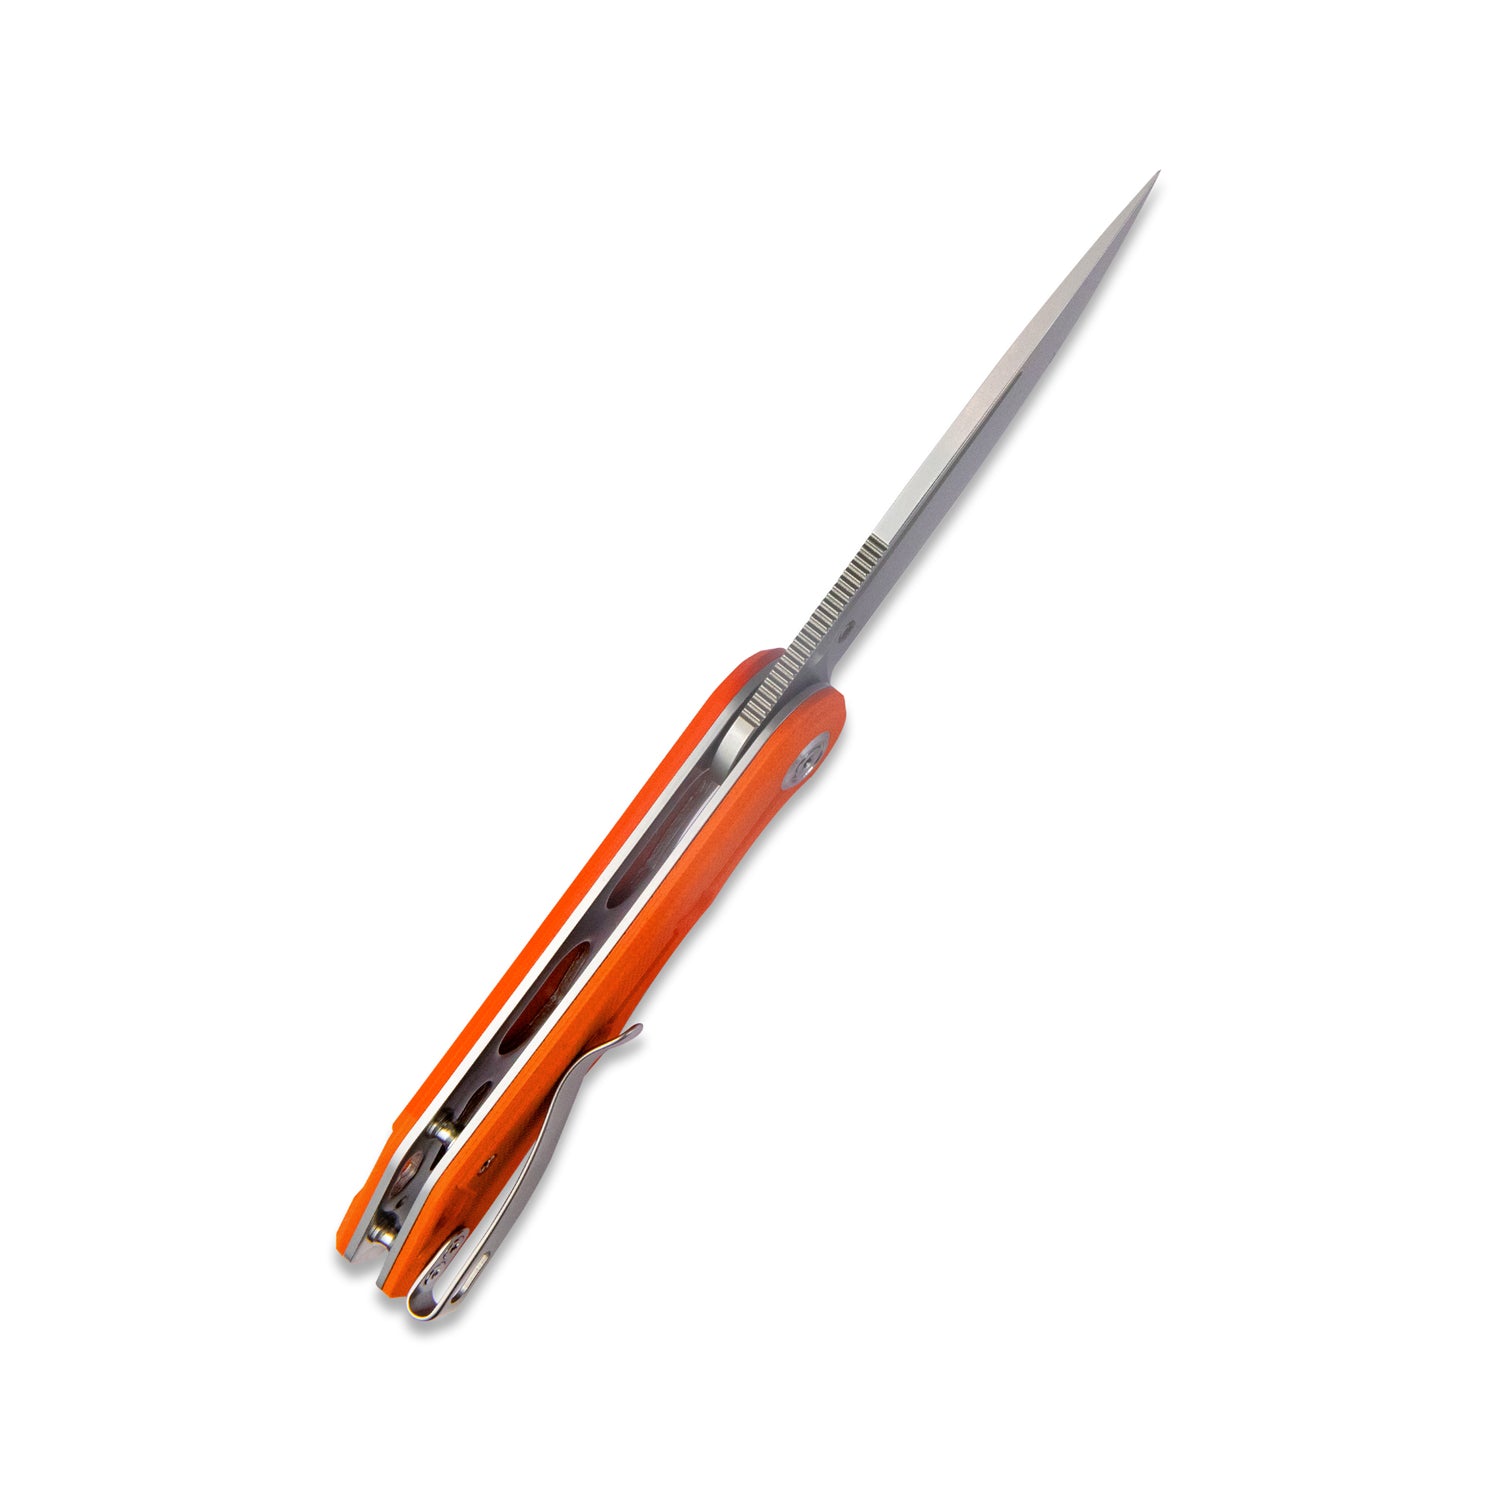 Kubey Mizo Liner Lock Flipper Folding Knife Orange G10 Handle 3.15" Bead Blast AUS-10 KU312I